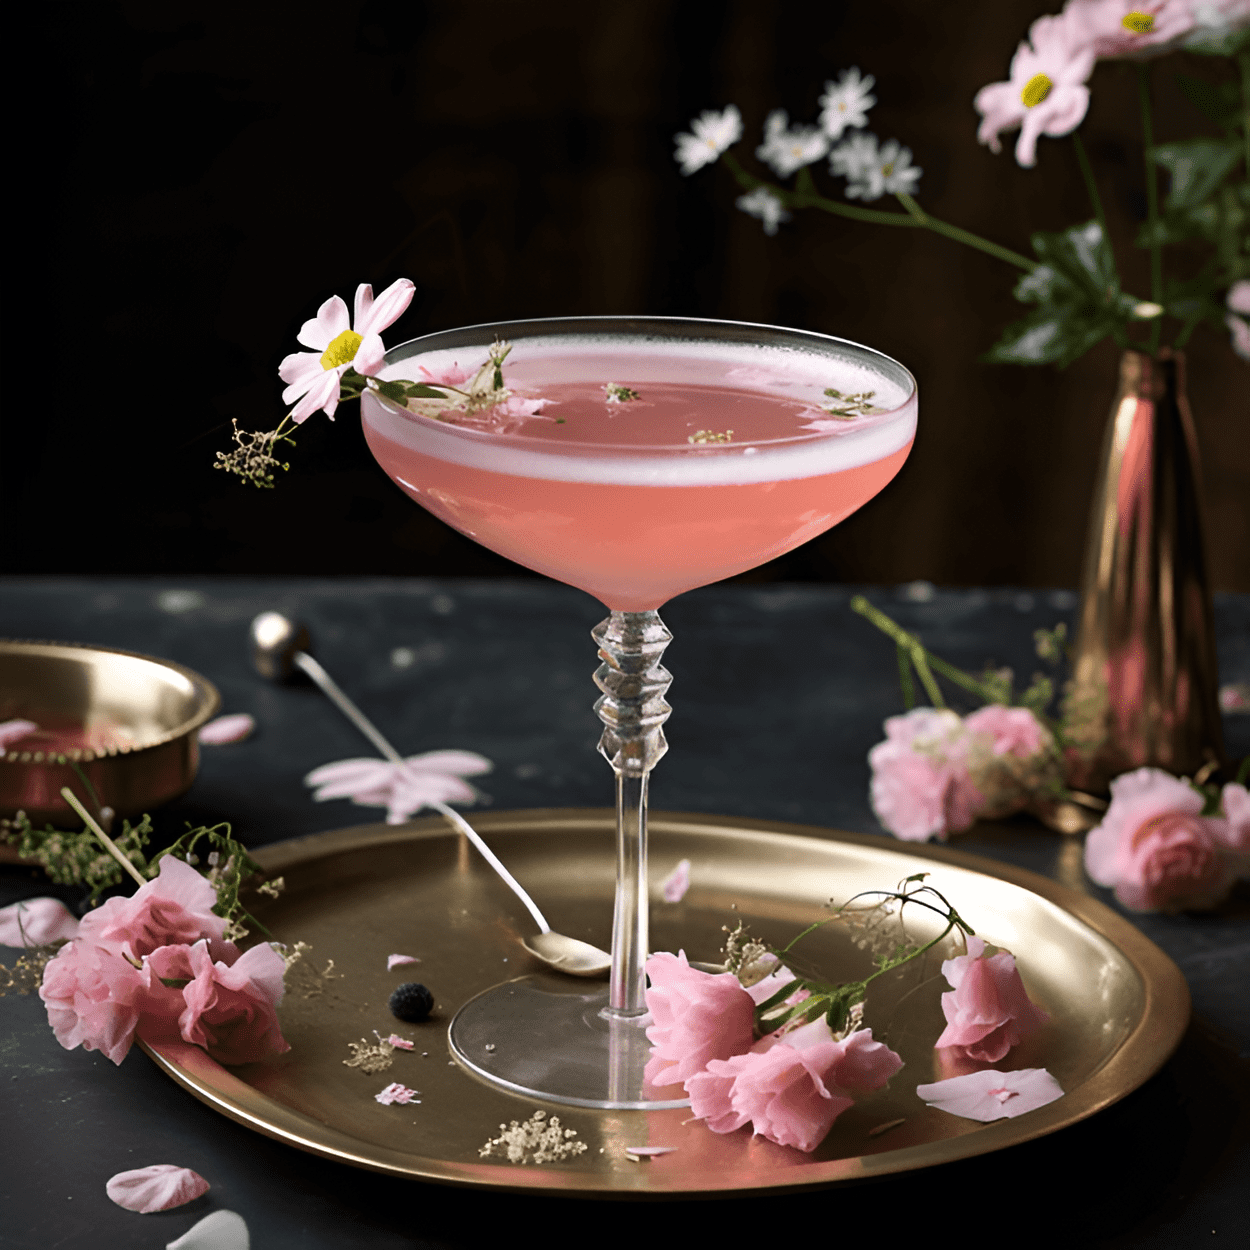 El Elixir Floral es un cóctel ligero y refrescante con un toque de dulzura. Tiene un delicado sabor floral con notas de saúco, rosa y lavanda. La adición de jugo de limón agrega un giro ácido, equilibrando la dulzura y agregando un final picante.